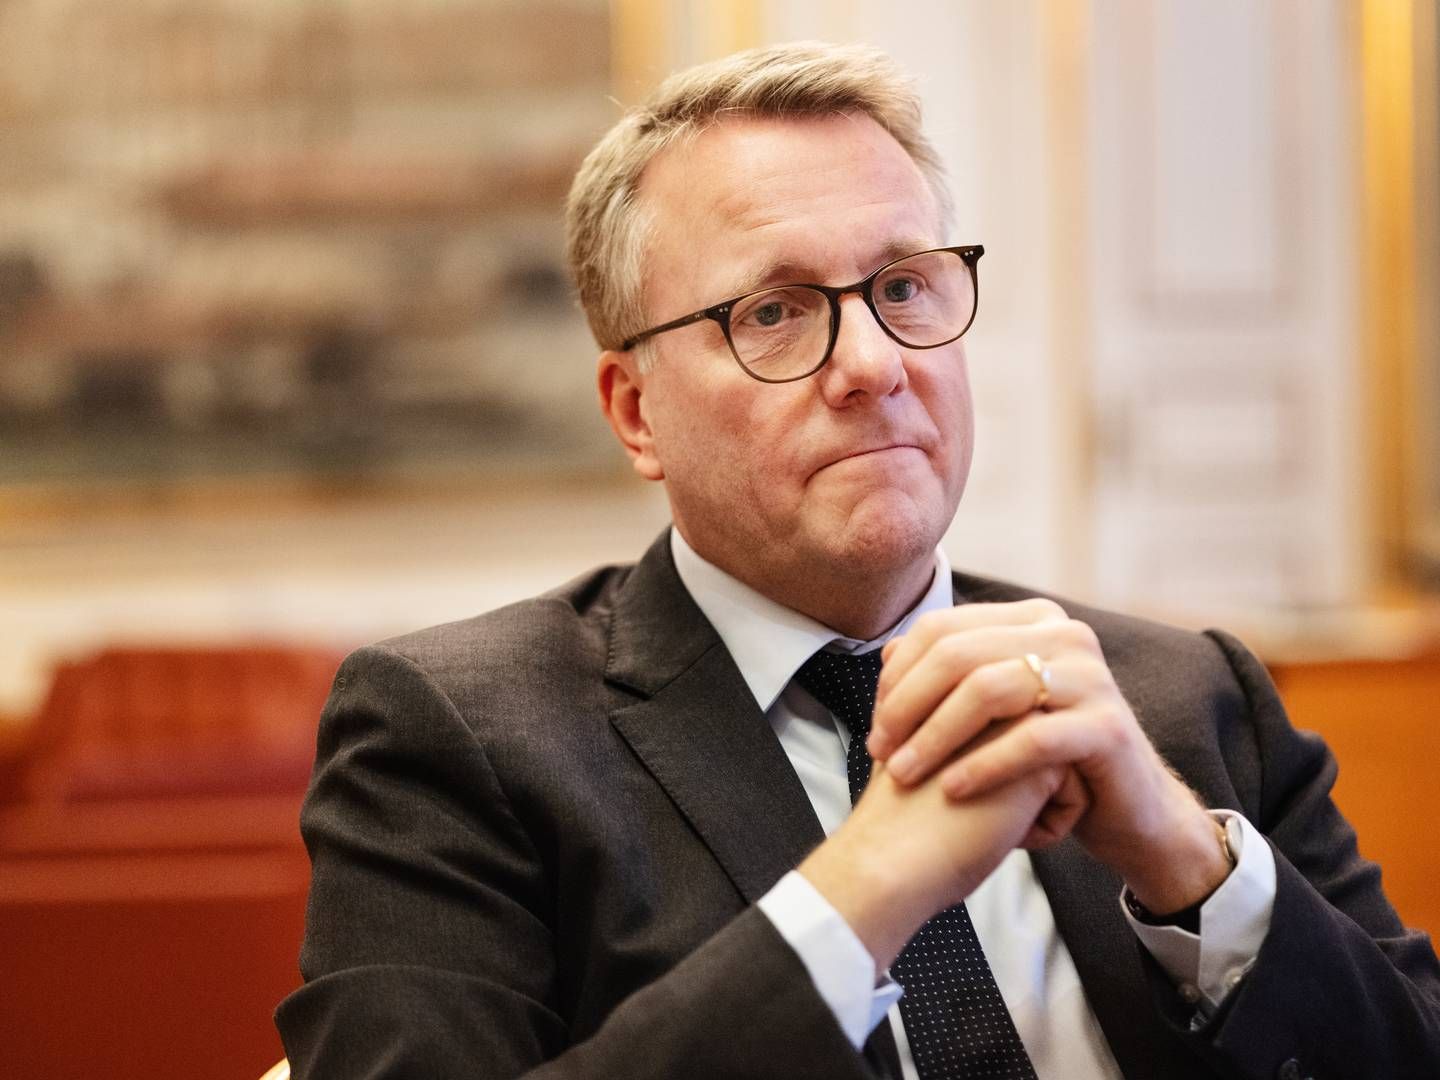 Erhvervsminister Morten Bødskov (S), der varsler et iværksætterudspil efter sommerferien | Foto: Gregers Tycho